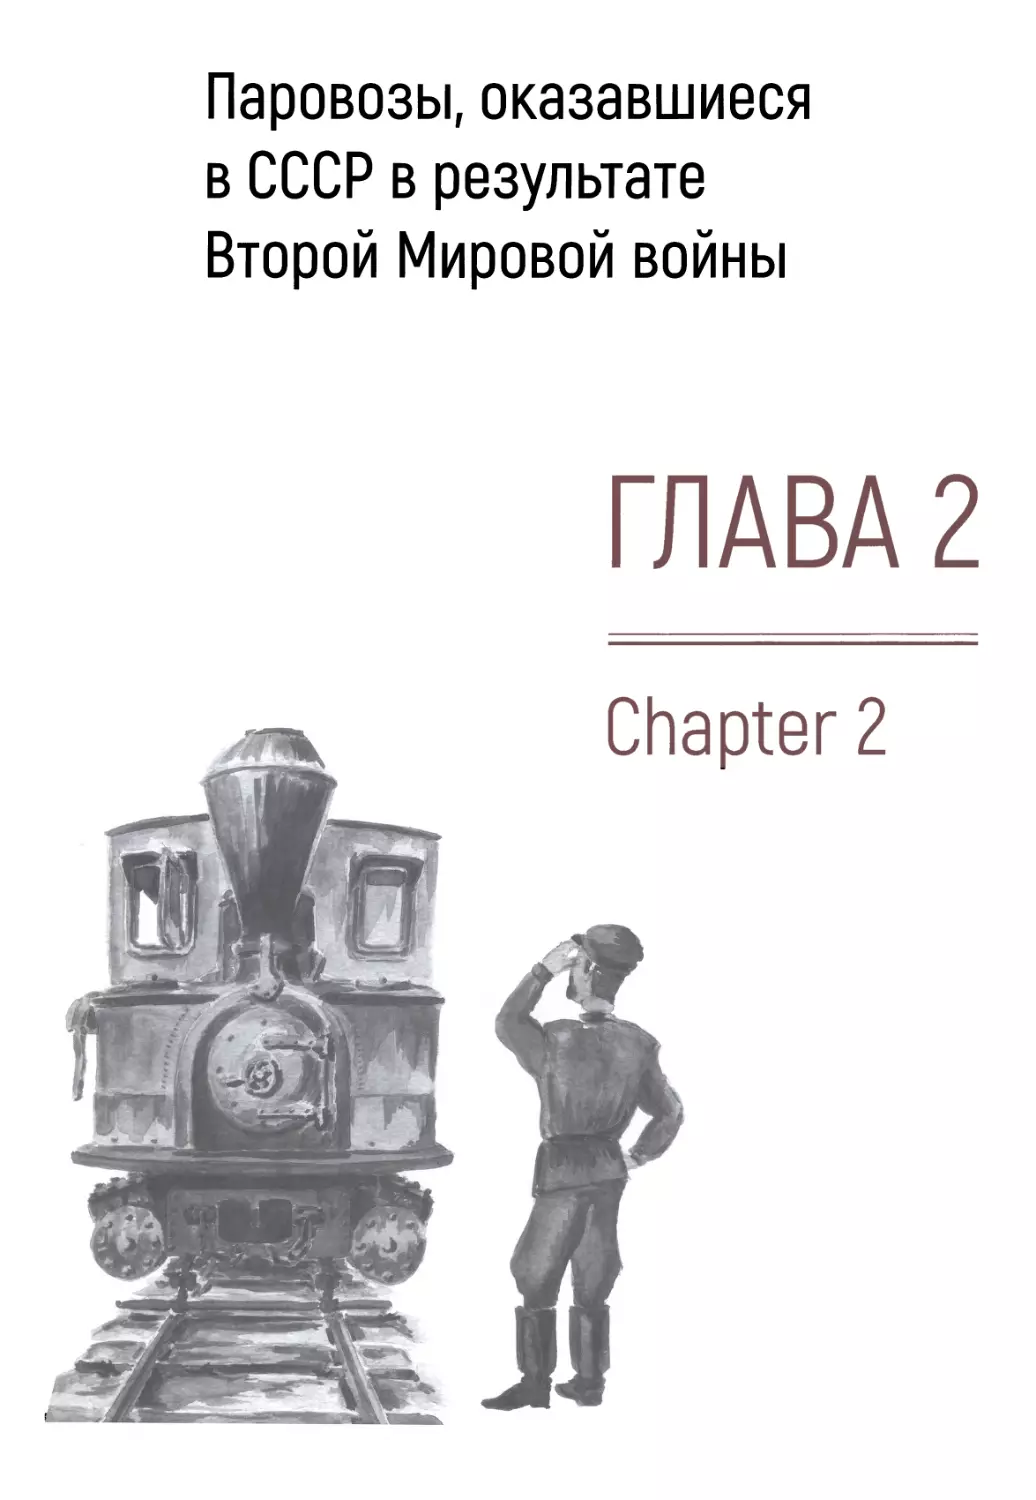 Глава 2. Паровозы, оказавшиеся в СССР в результате Второй Мировой войны